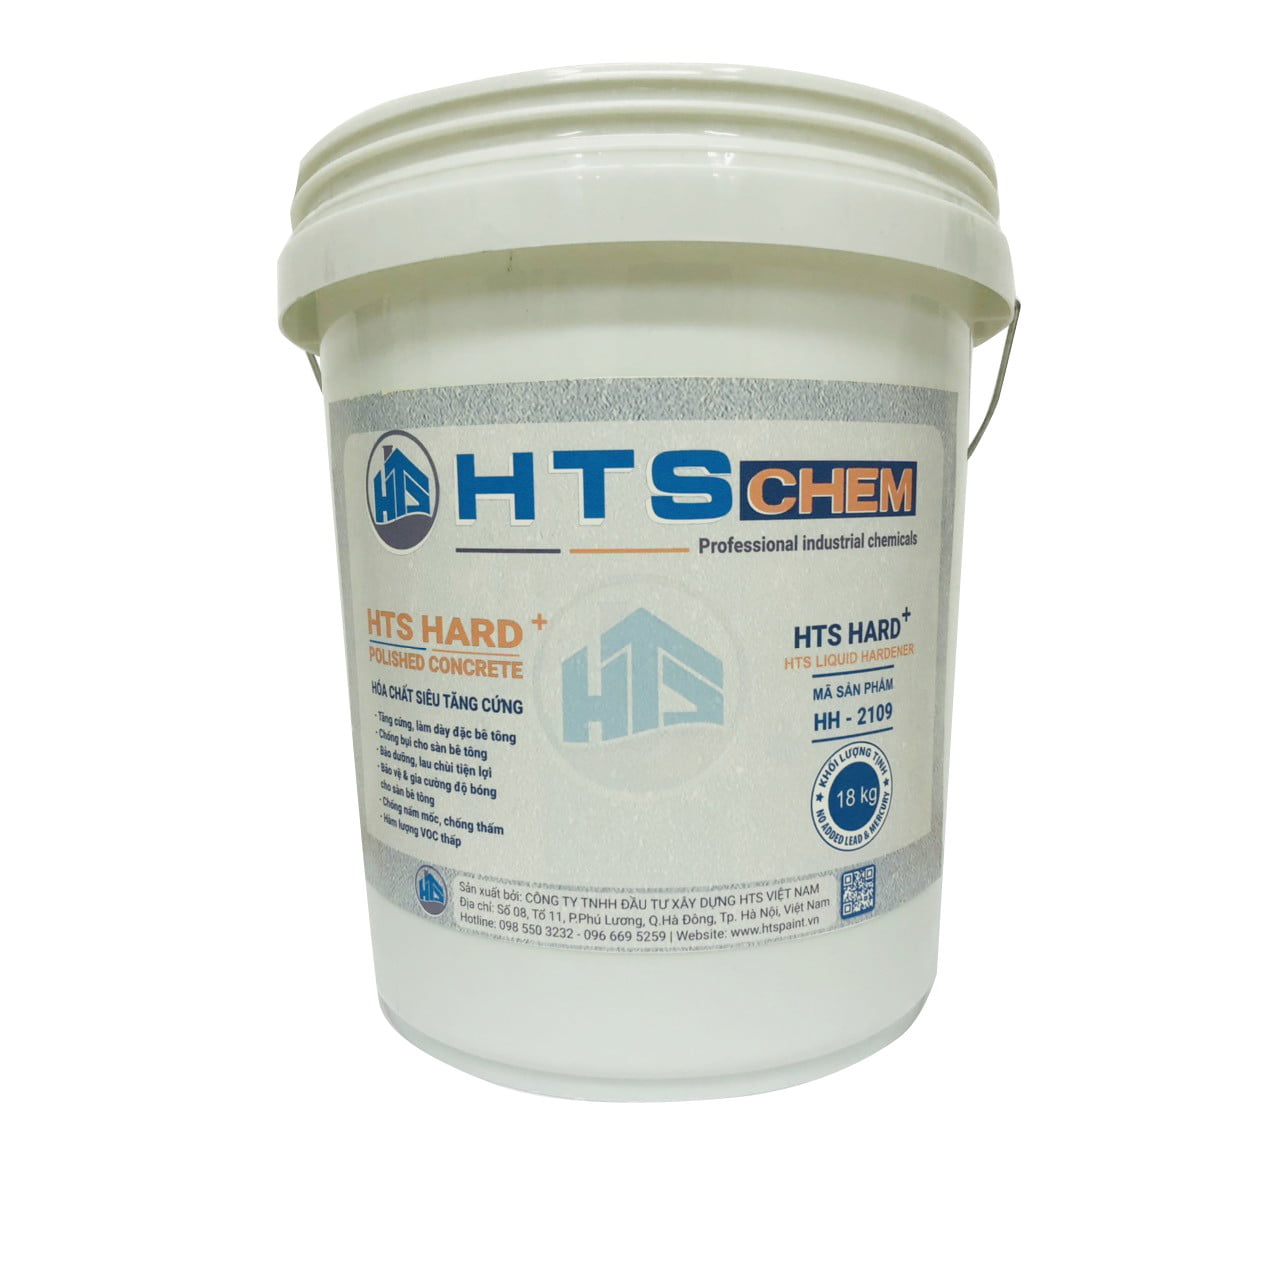 Tăng cứng HTS HARD+ Liquid Hardener